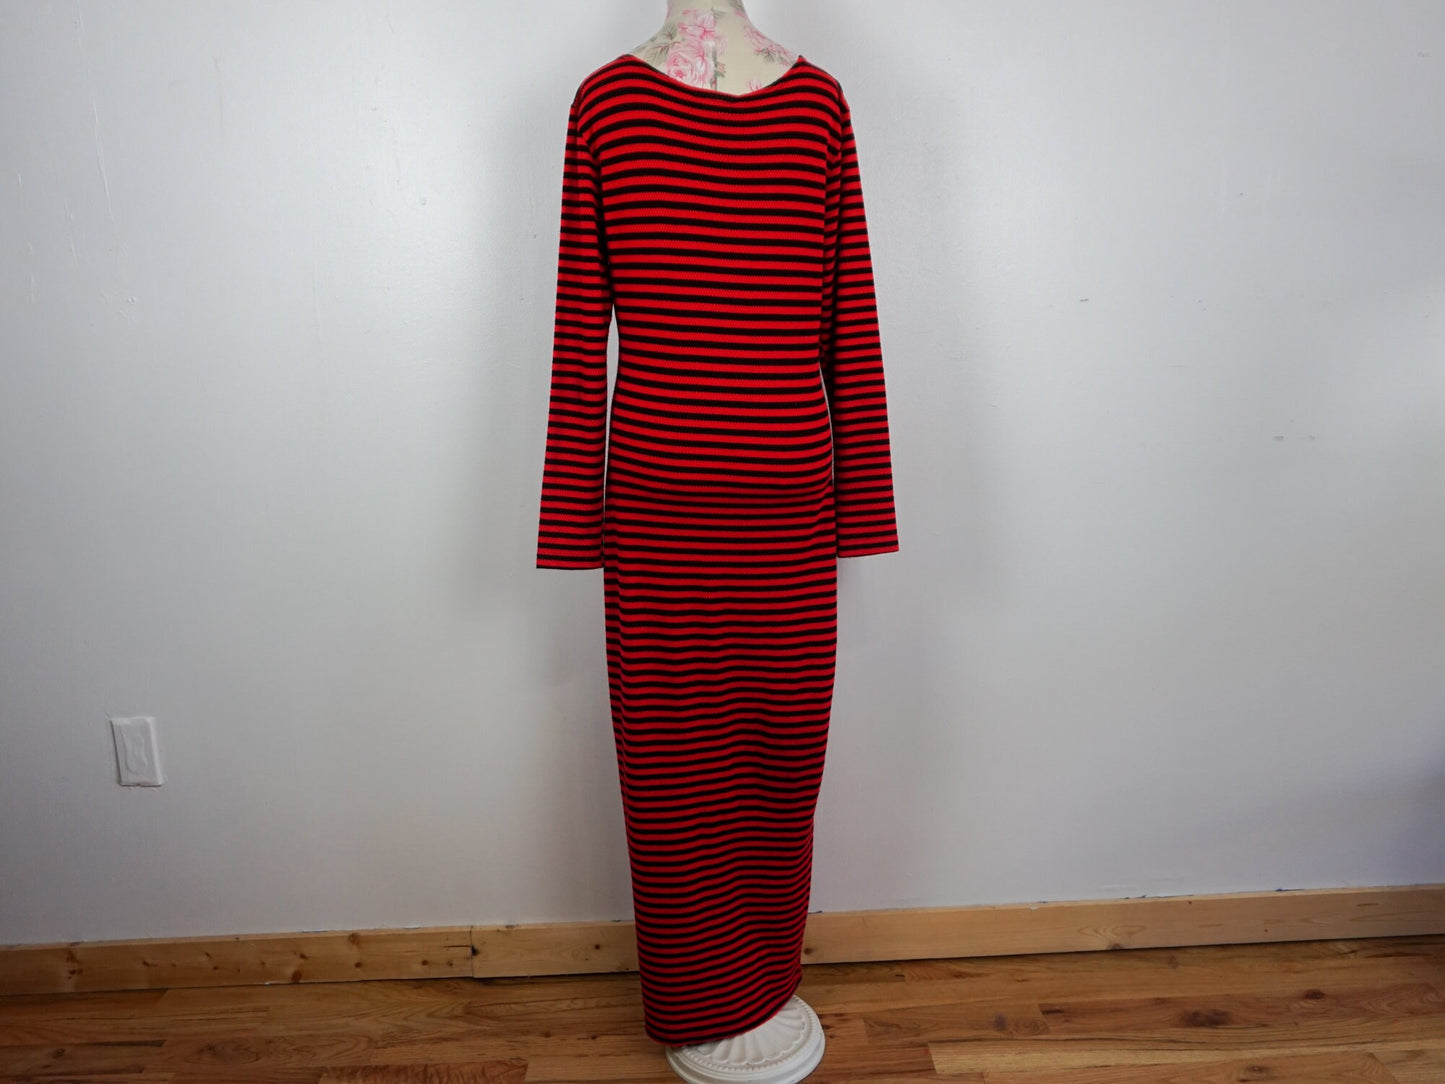 Black Red Striped Maxi Dress, Size Medium